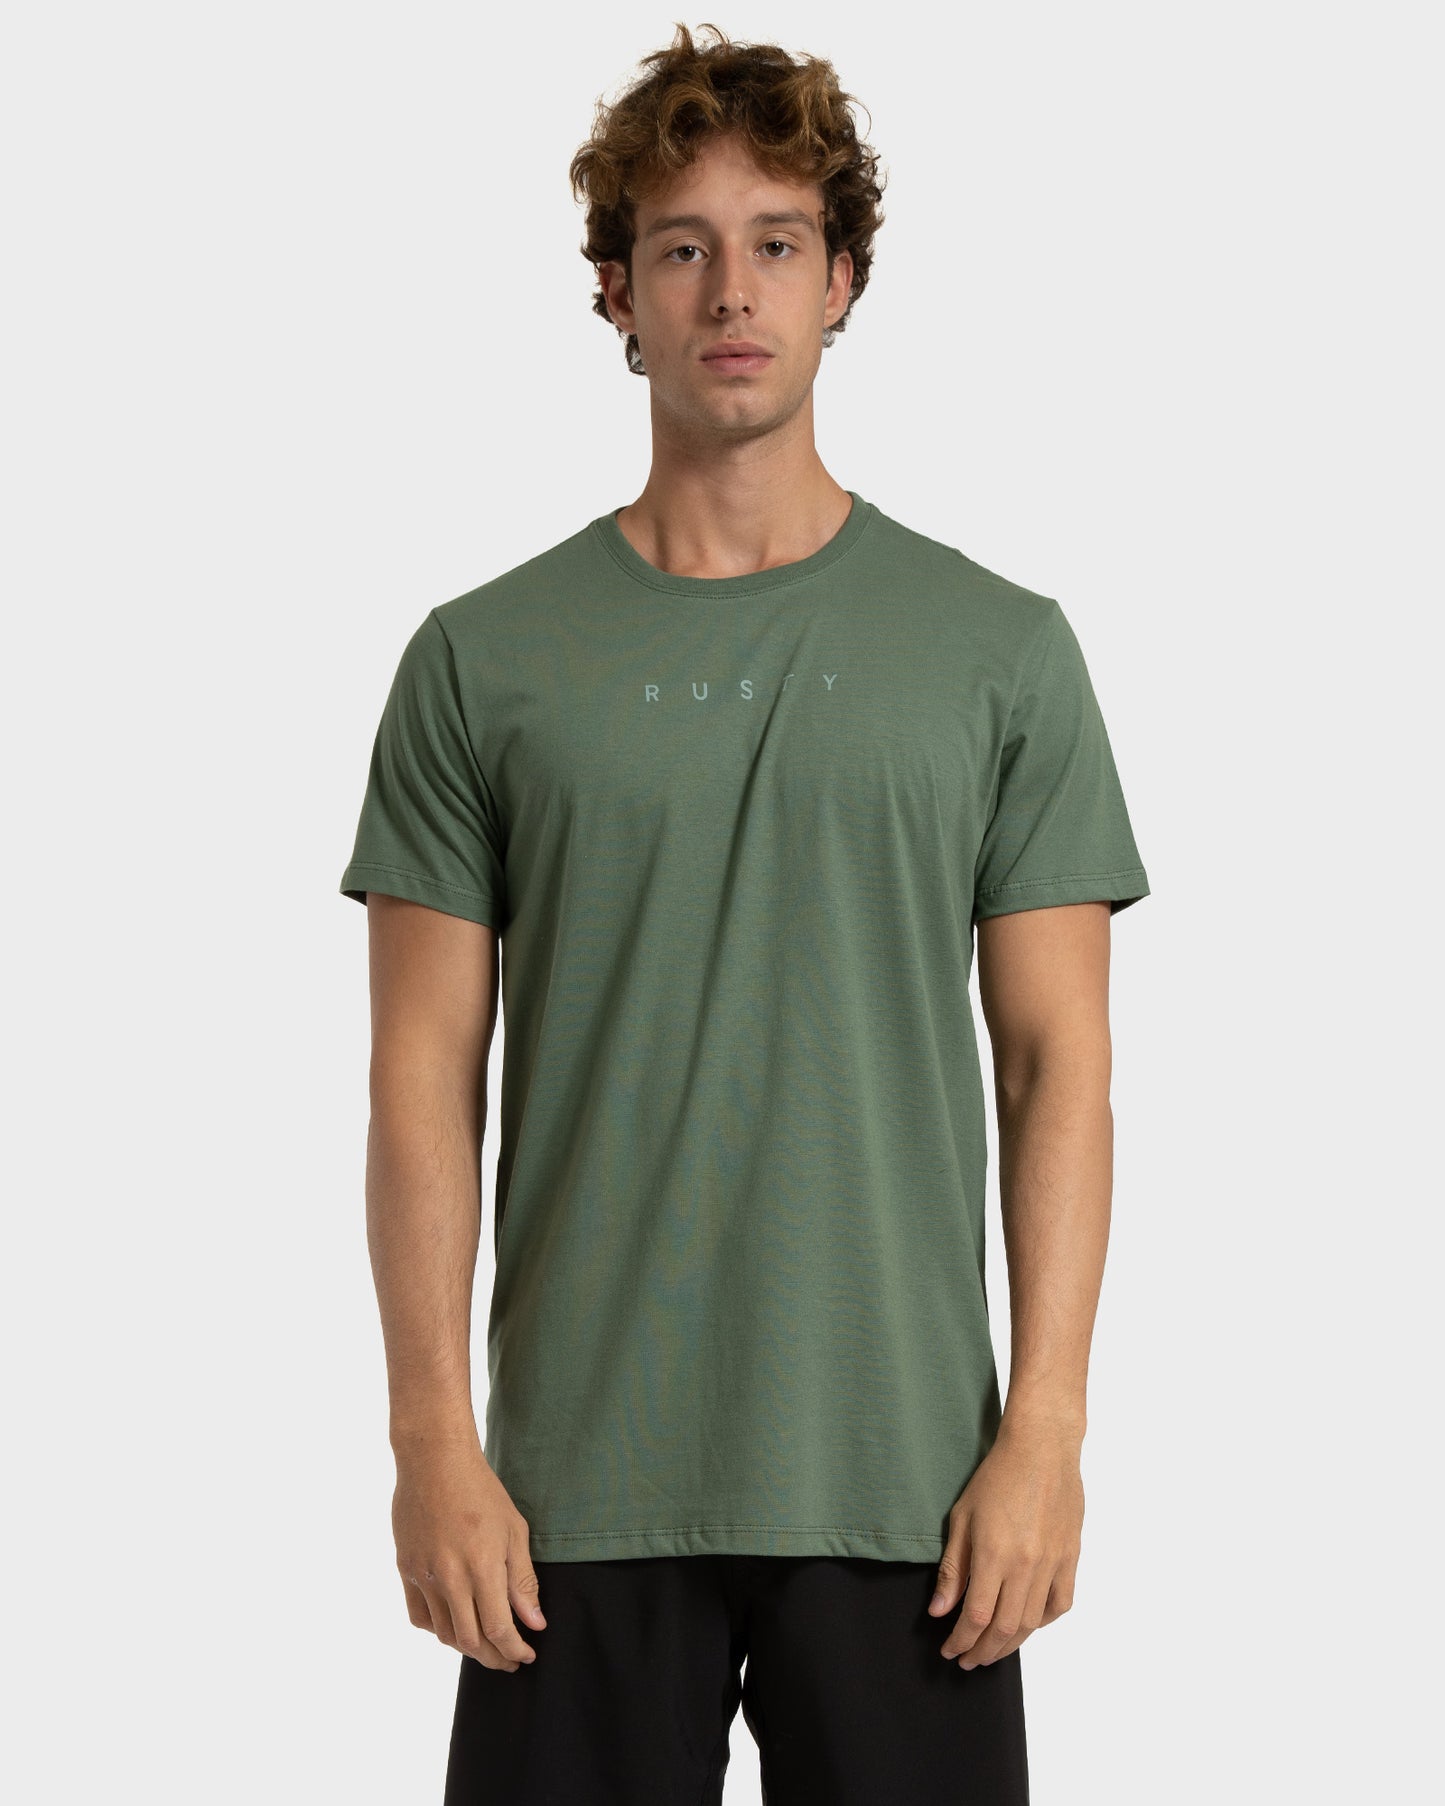 Camiseta Rusty Short Cut Verde